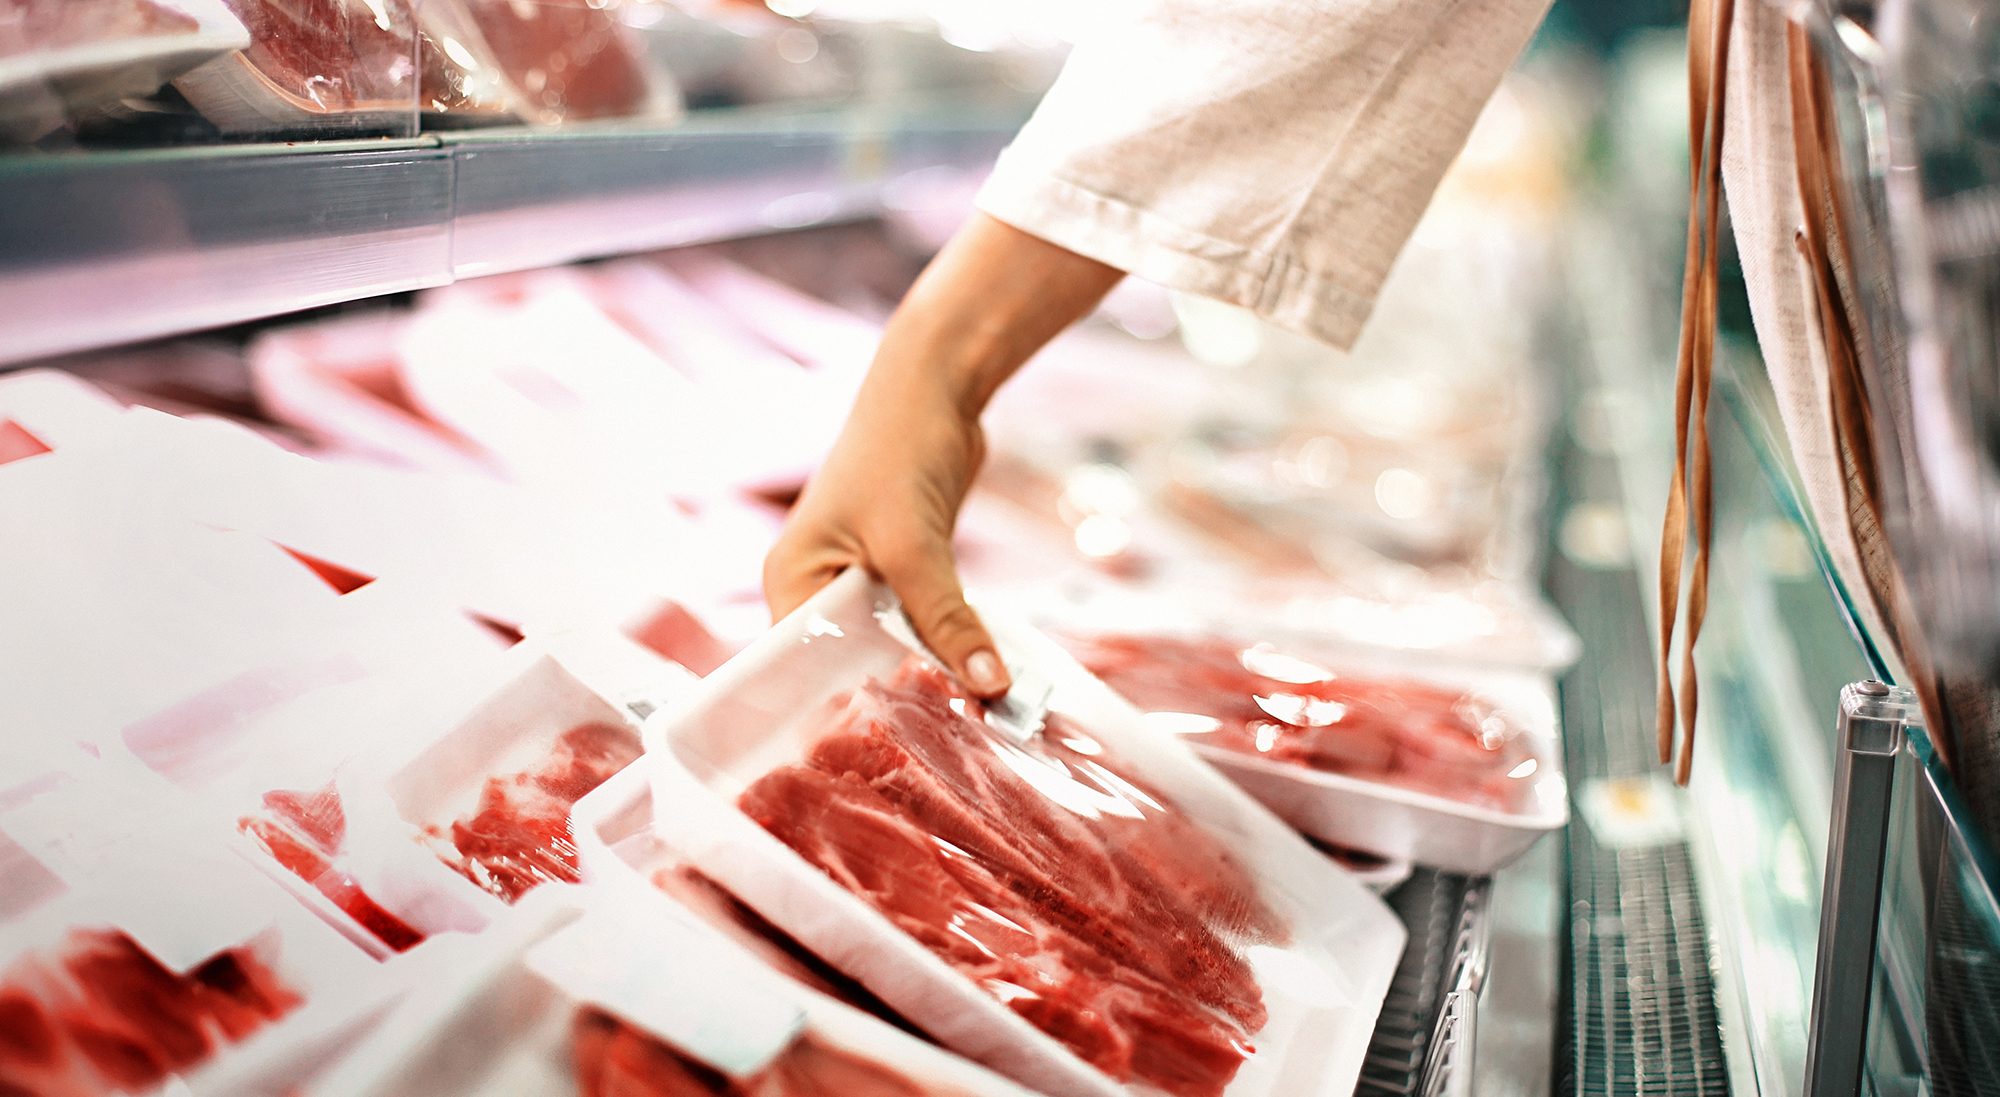 La carne y los precios: Cuando el consumo altera la dinámica del ajuste